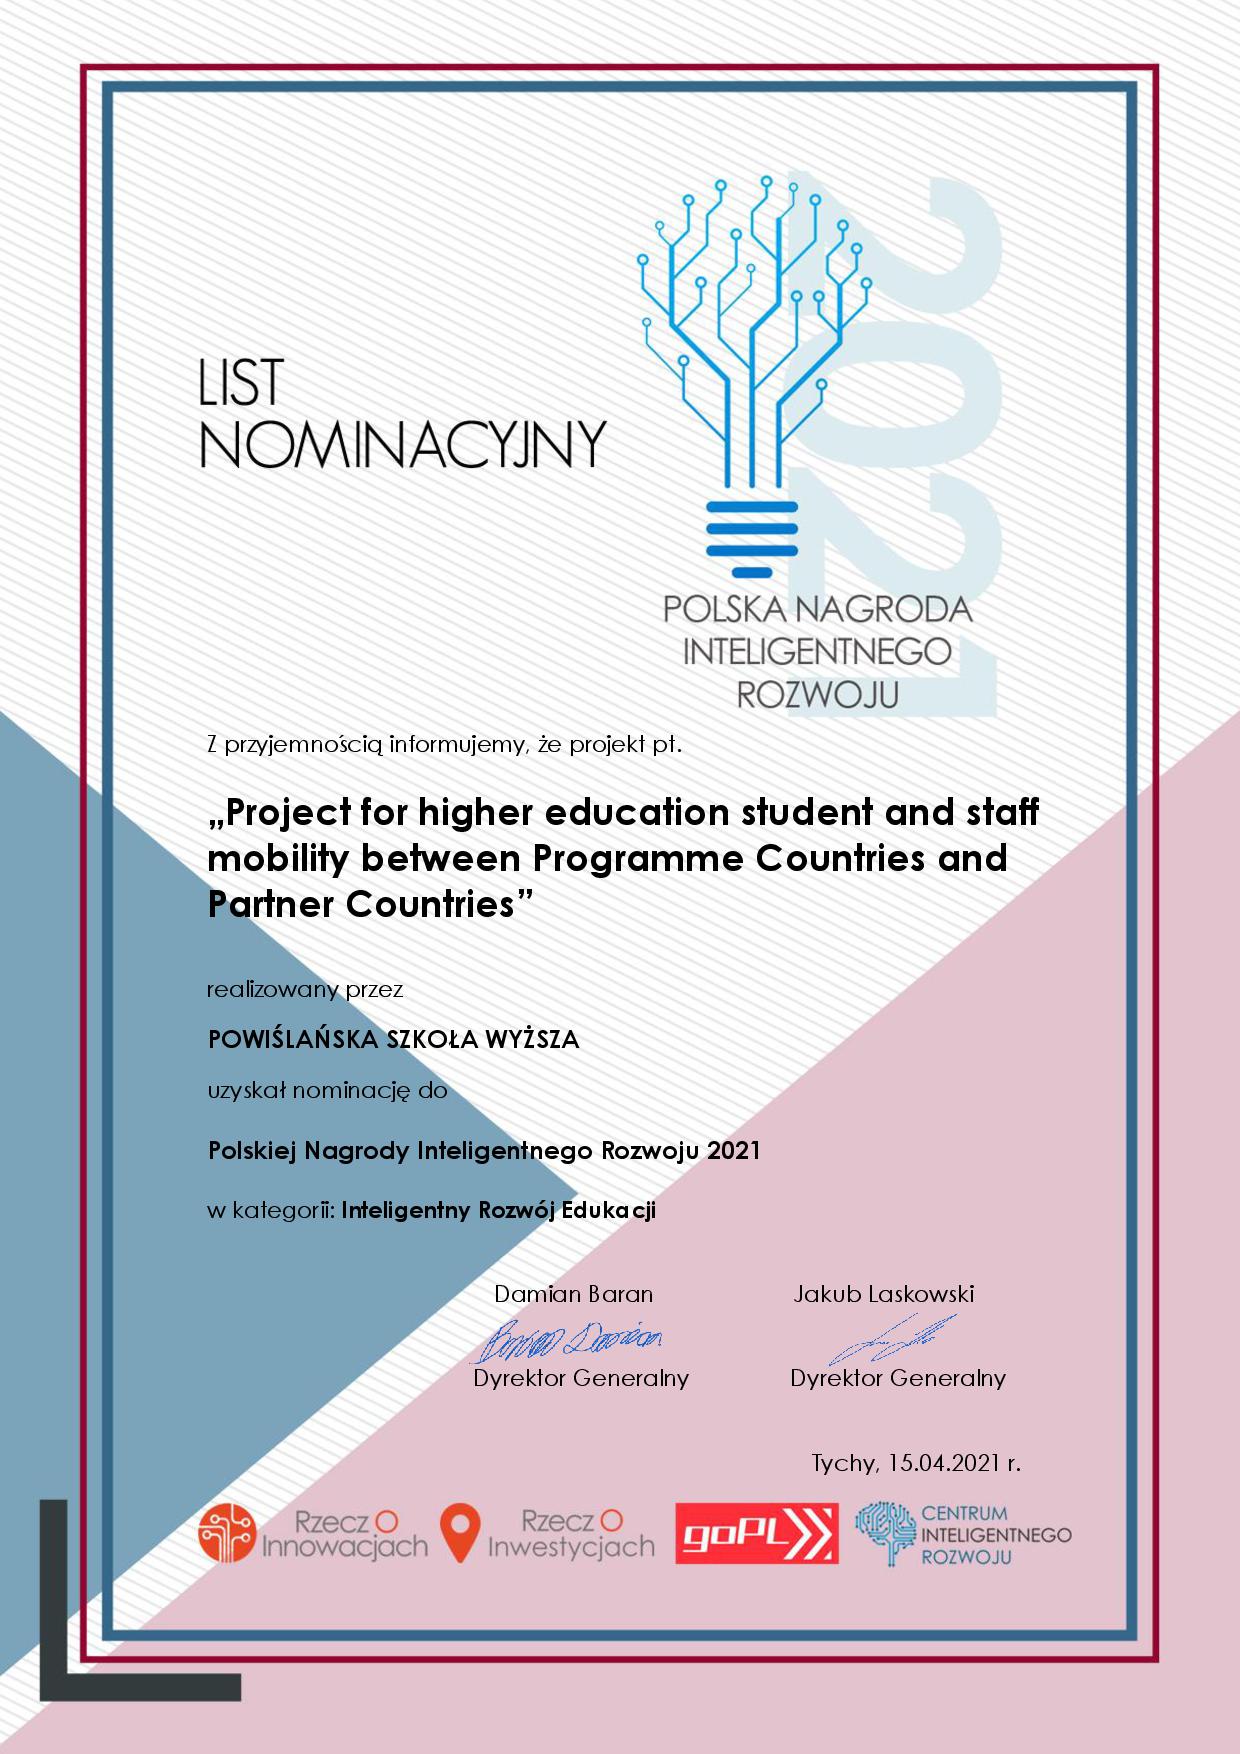 List Nominacyjny do Polskiej Nagrody Inteligentnego Rozwoju 2021 - POWIŚLAŃSKA SZKOŁA WYŻSZA